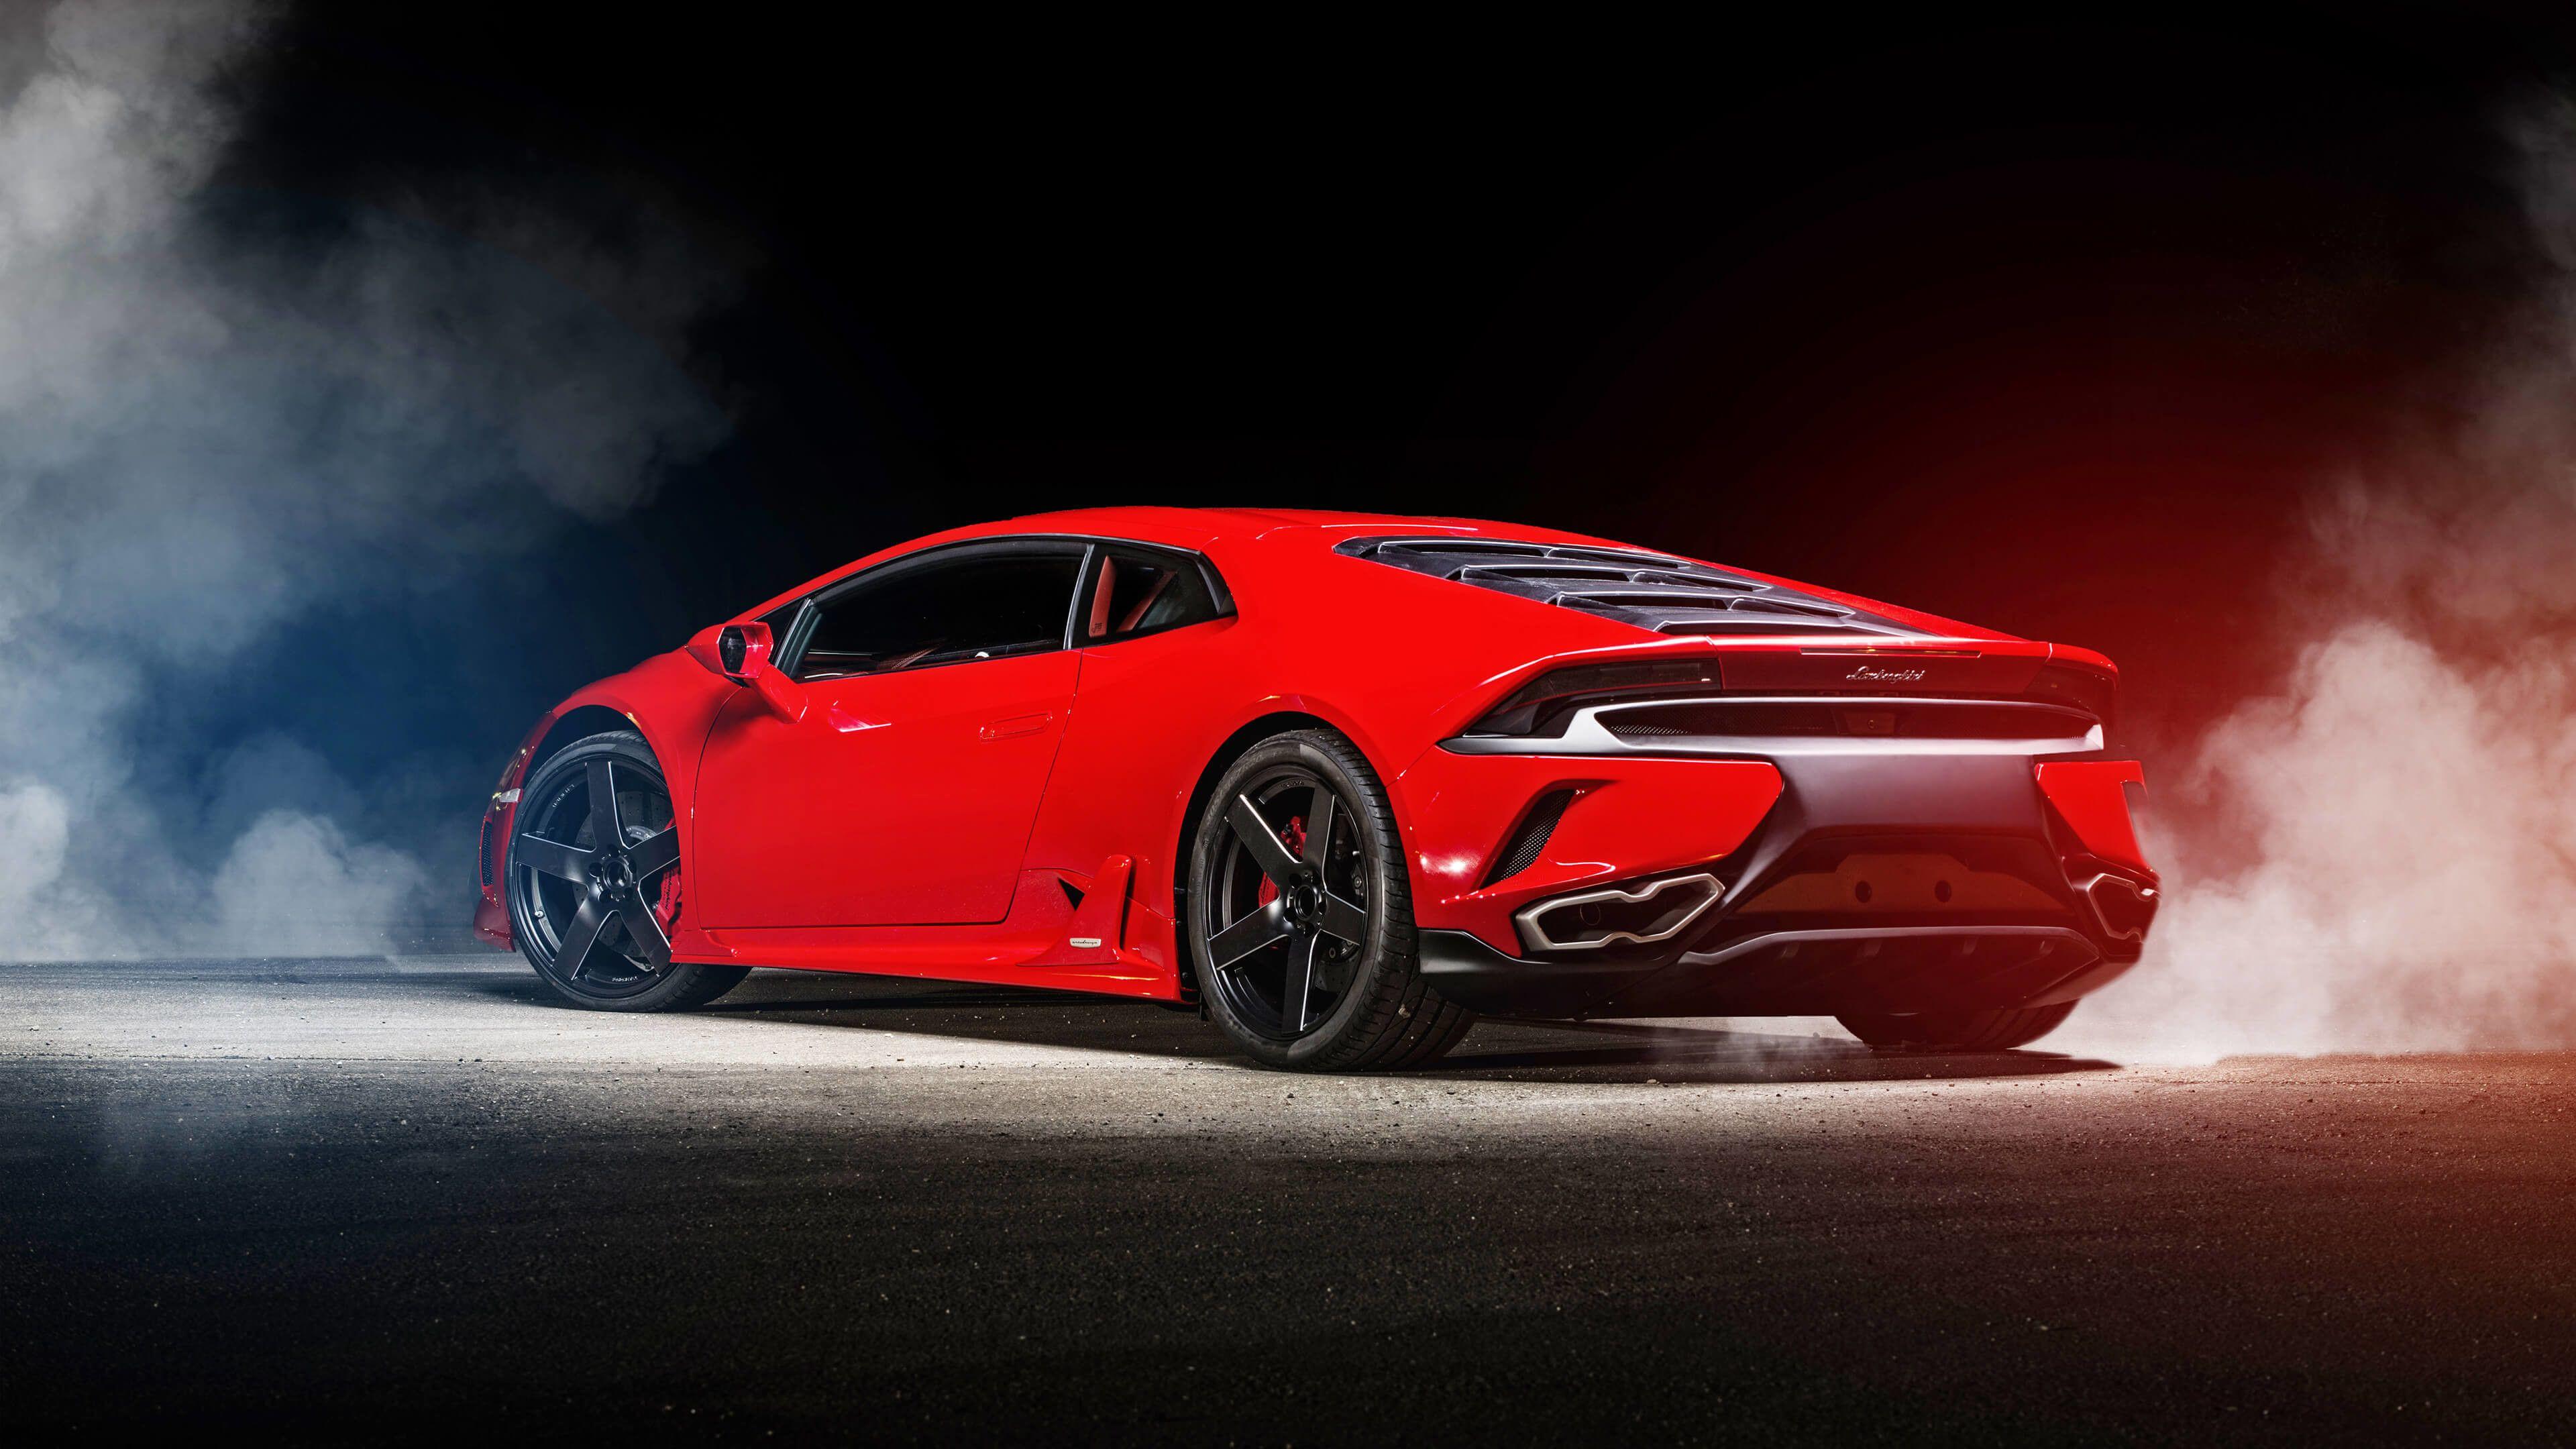 Hình nền 3840x2160 Mkbhd 4k - Lamborghini Huracan Evo Red, Tải xuống